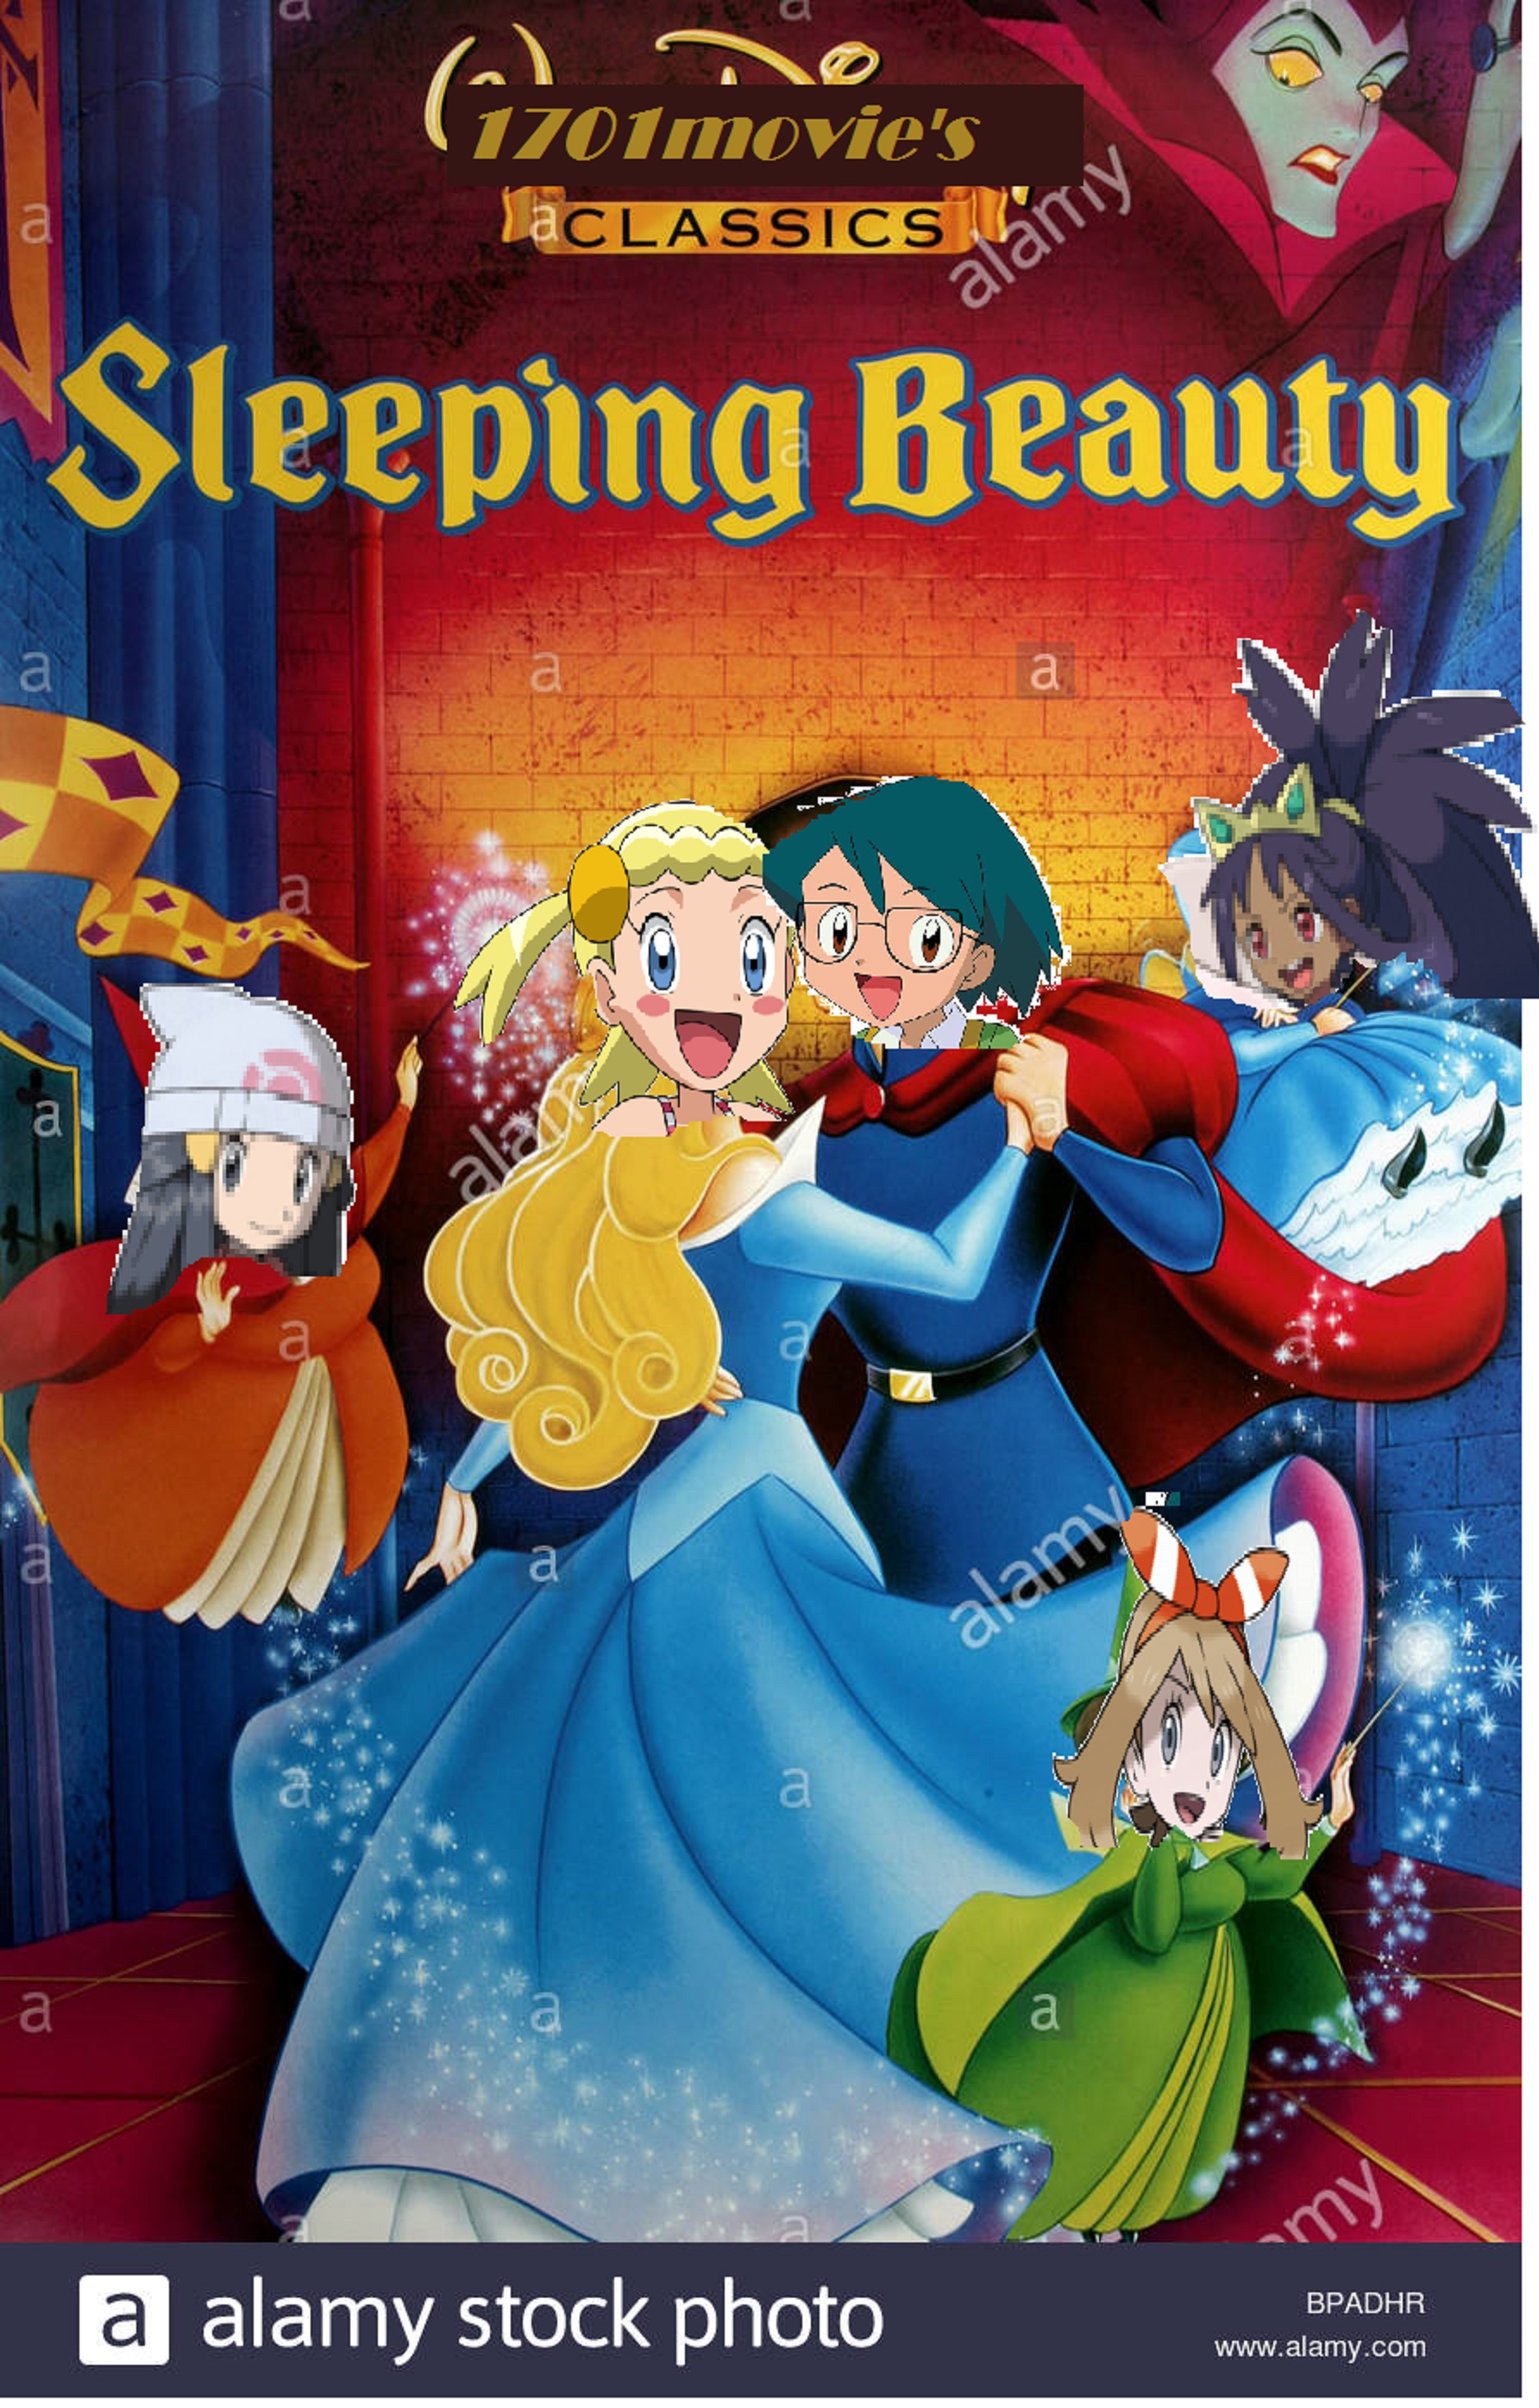 Sleeping Beauty 1701Movies Human Style  The Parody Wiki  FANDOM powered by Wikia